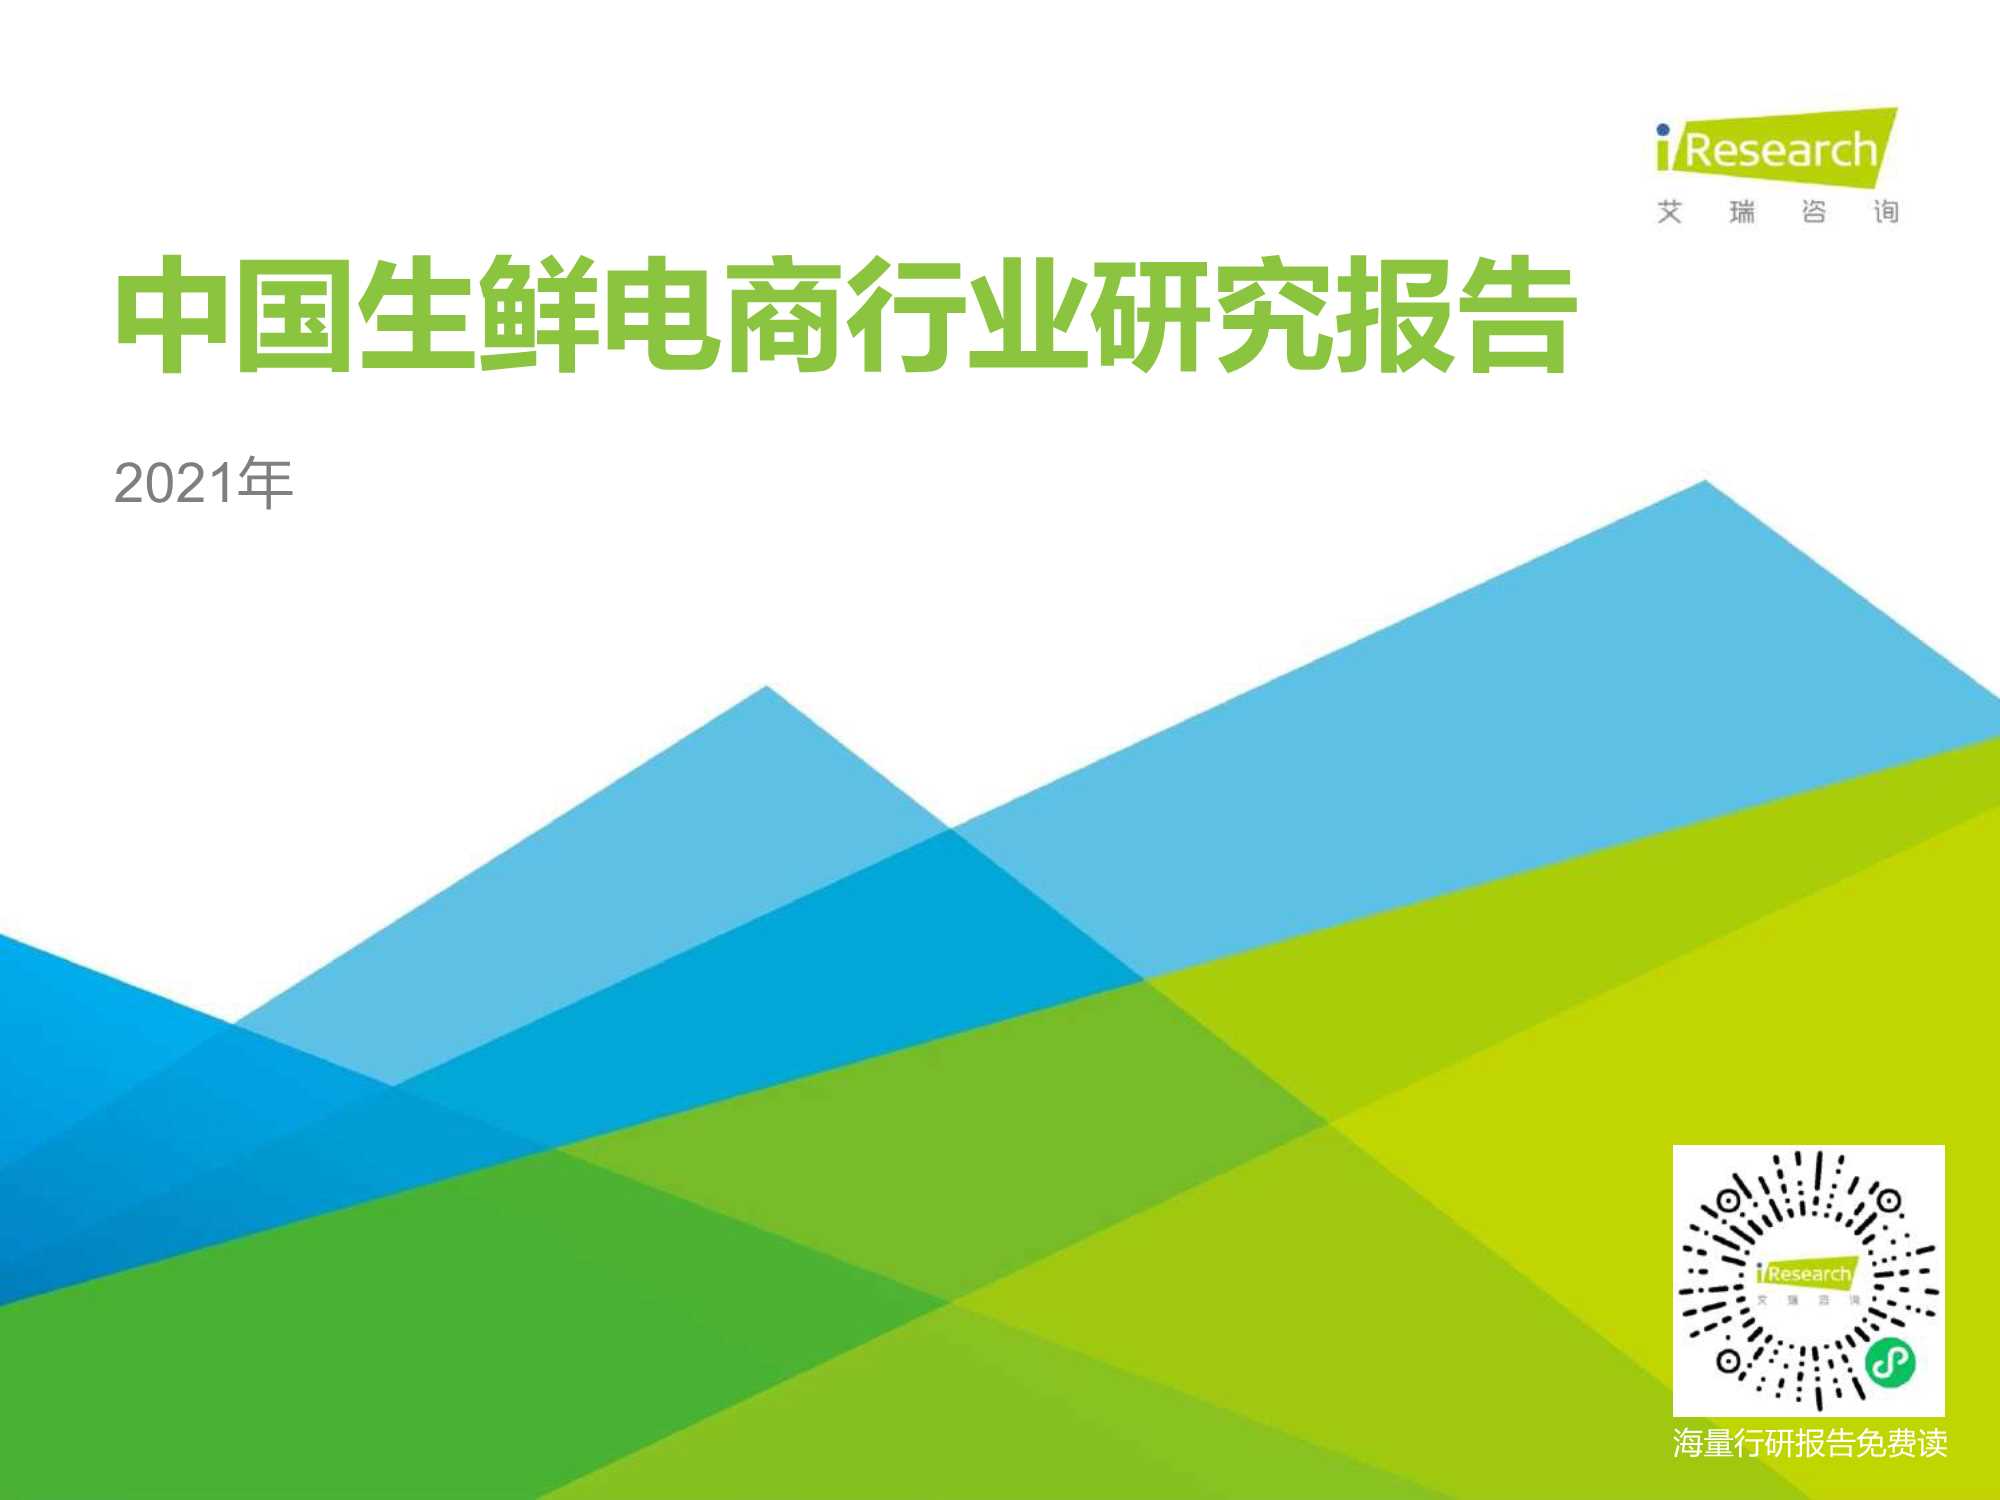 艾瑞咨询-2021年中国生鲜电商行业研究报告-2021.05-29页